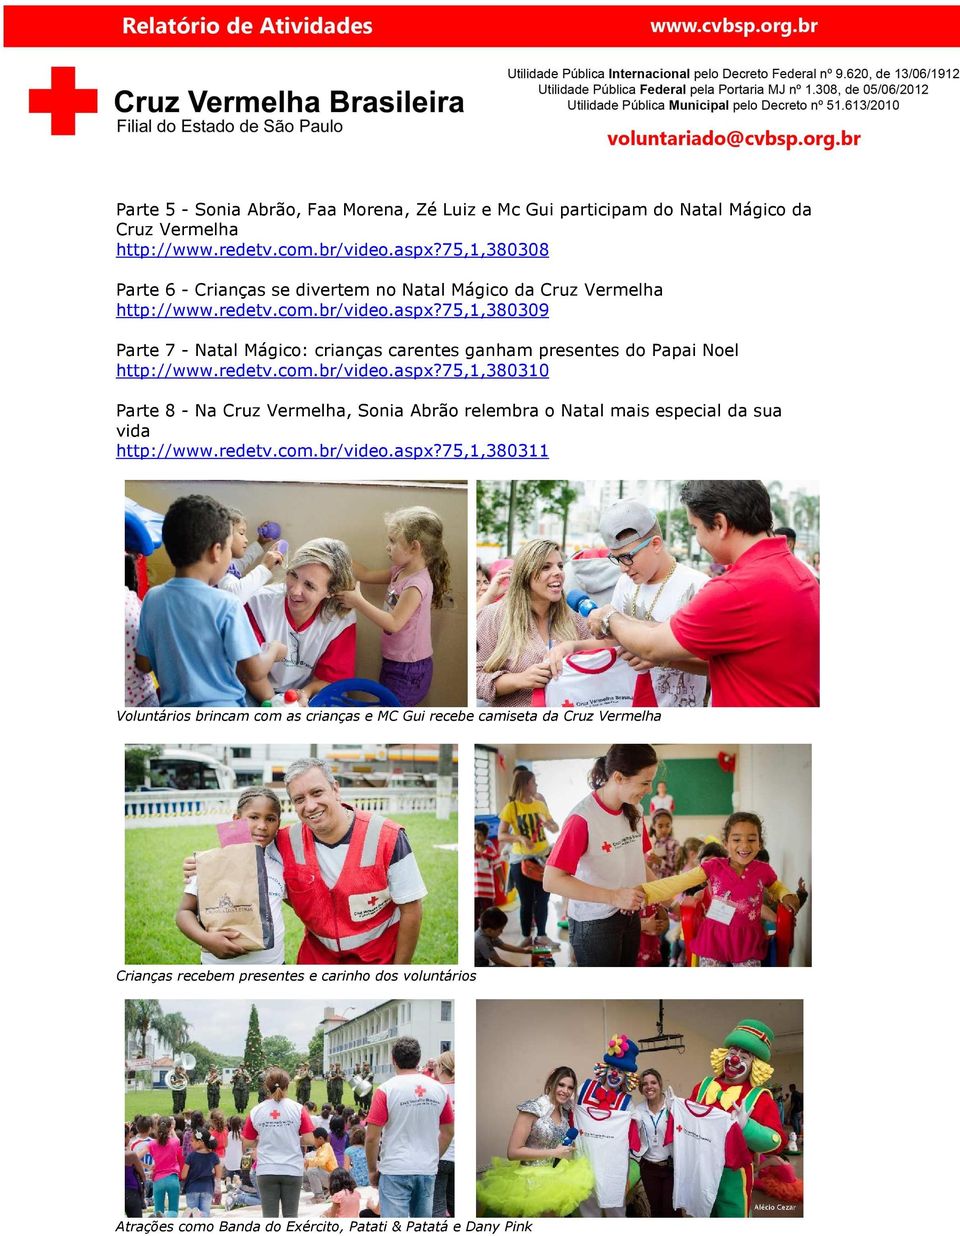 75,1,380309 Parte 7 - Natal Mágico: crianças carentes ganham presentes do Papai Noel http://www.redetv.com.br/video.aspx?